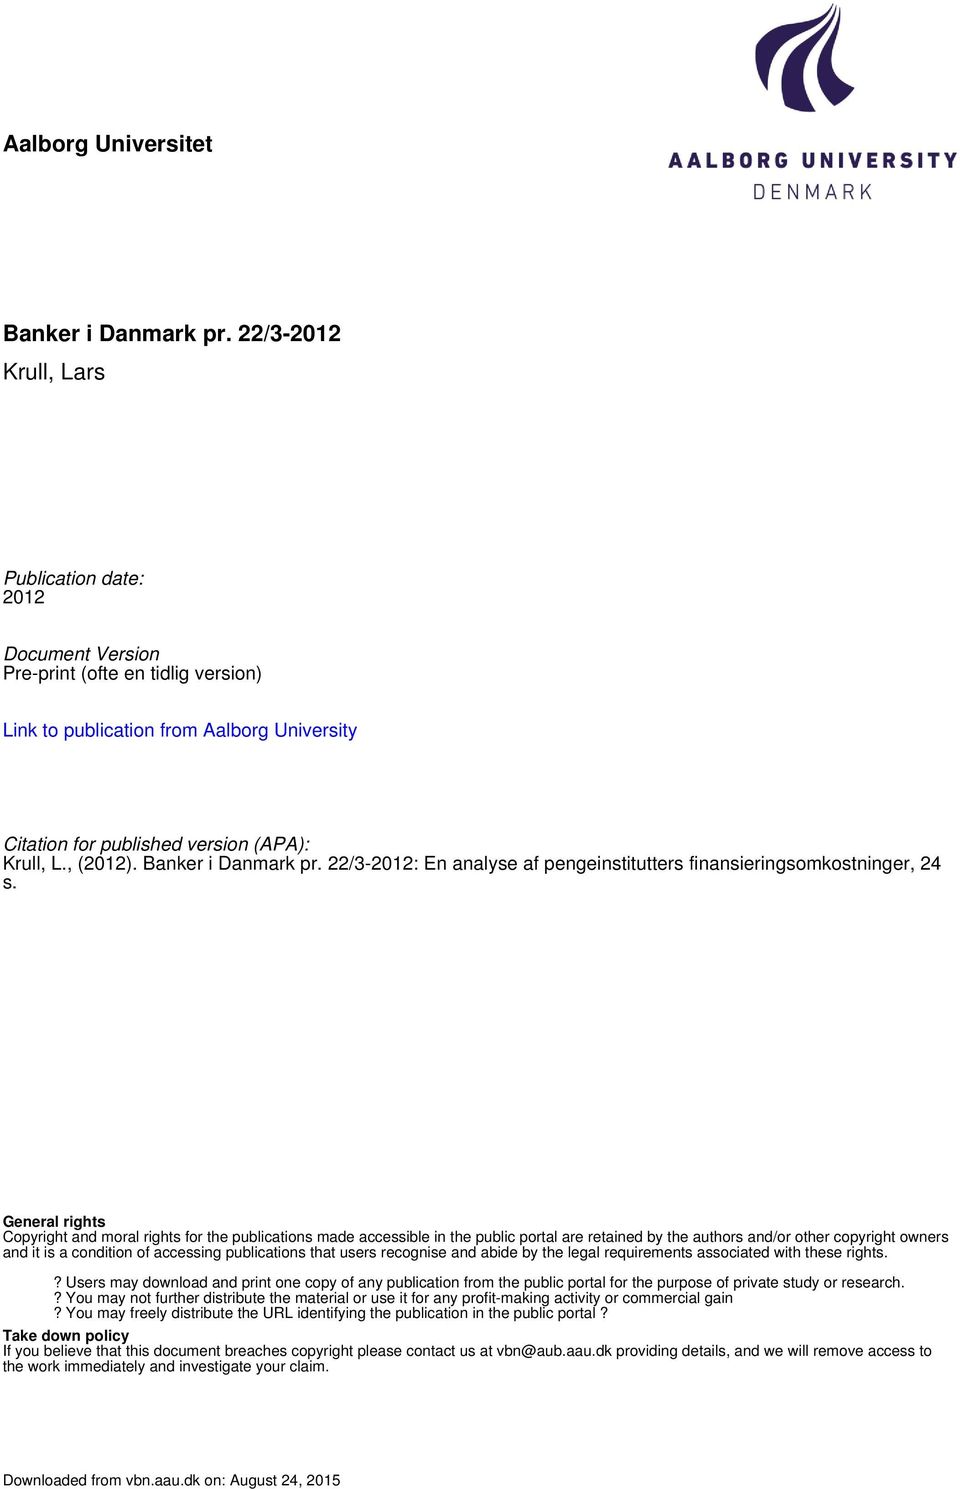 Banker i Danmark pr. 22/3-2012: En analyse af pengeinstitutters finansieringsomkostninger, 24 s.